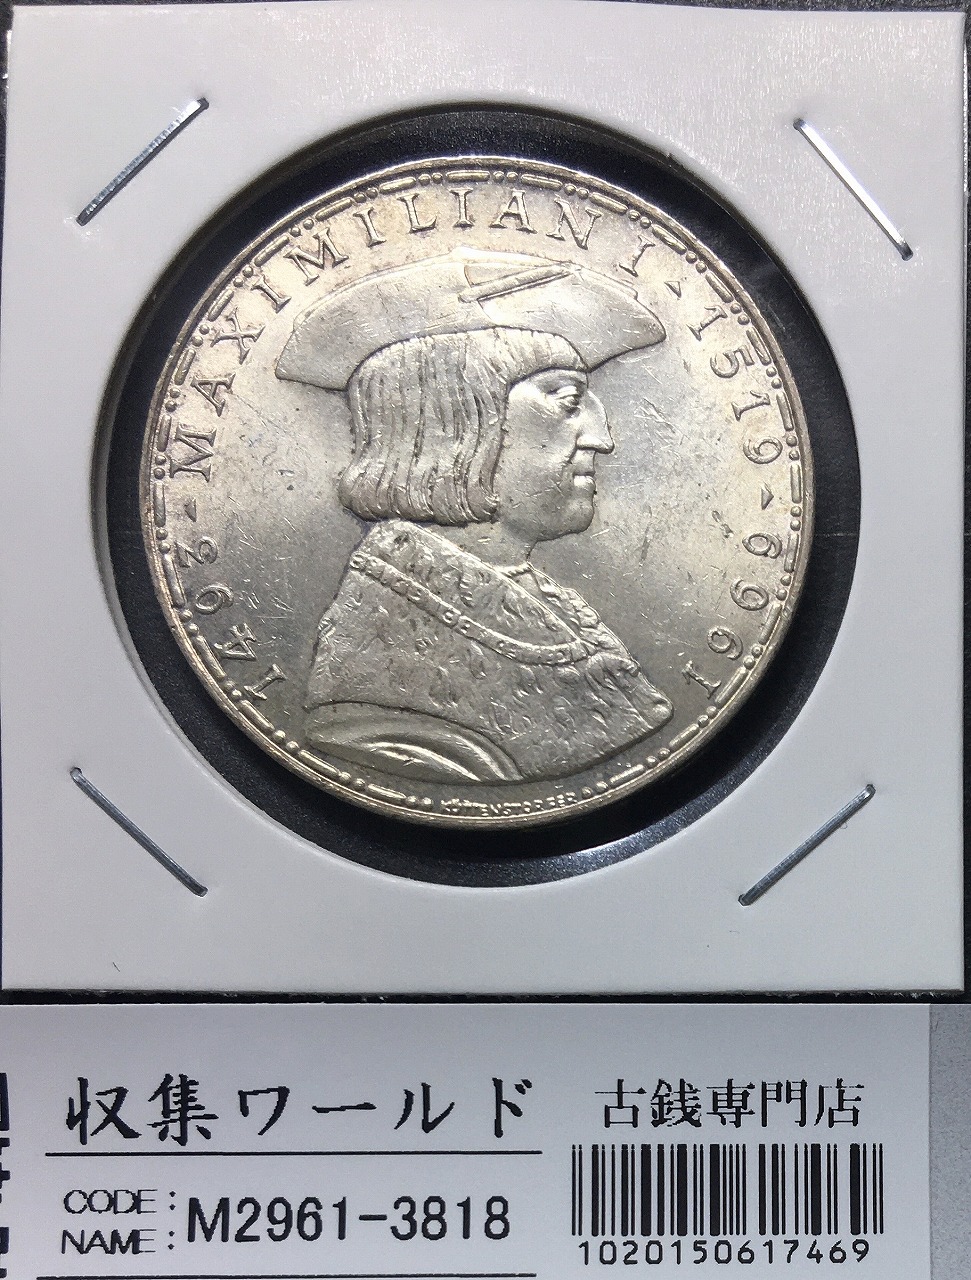 オーストリア 50シリング銀貨 1969年銘 マクシミリアン1世没後450年記念 美品